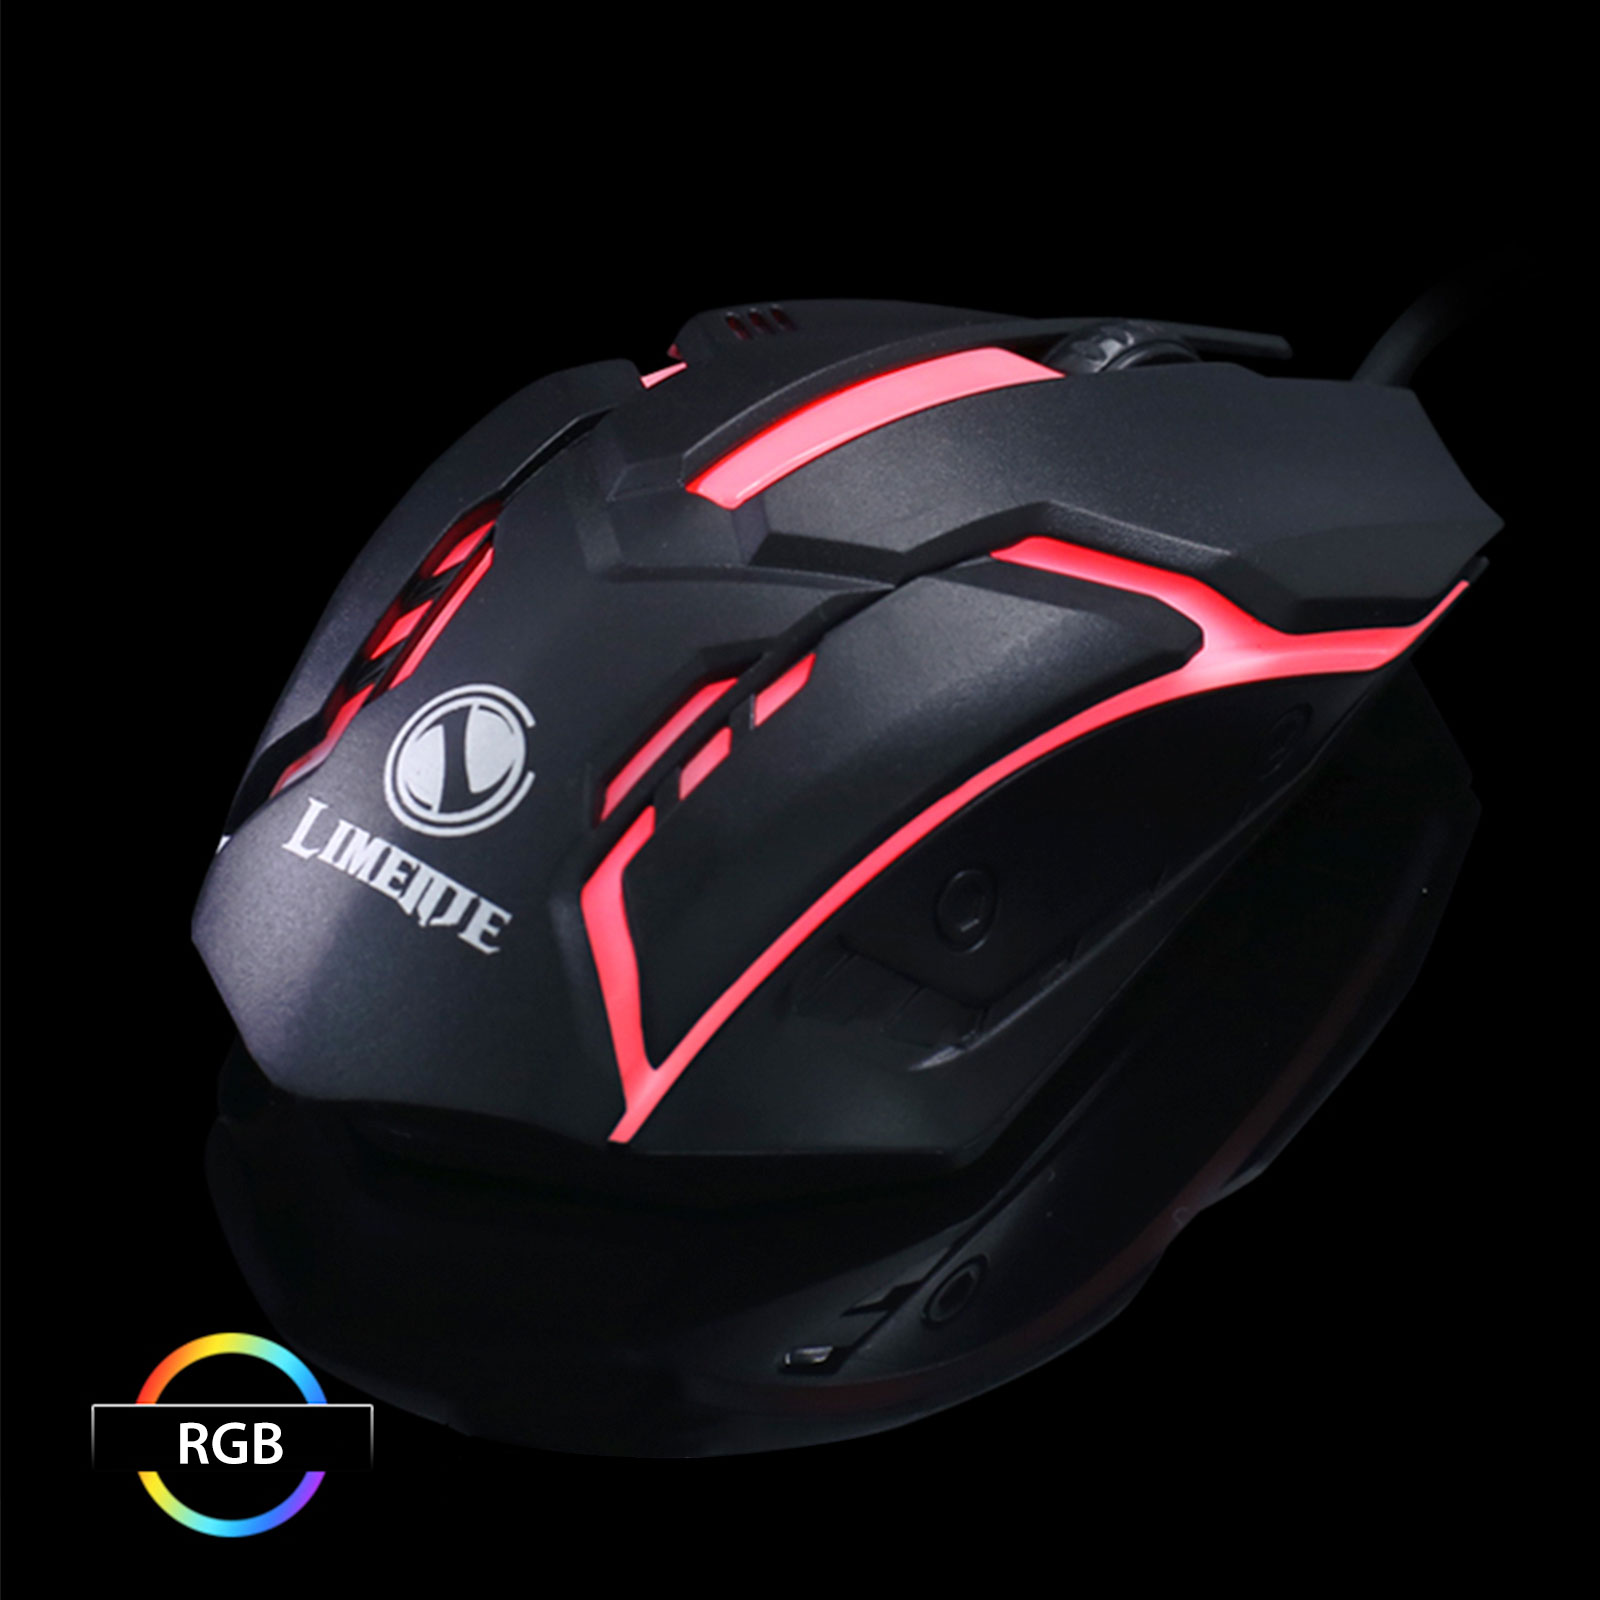 mouse รุ่น S1  RGB Gaming Mouse (เลือกสี ดำ ขาว) ของมีพร้อมส่ง